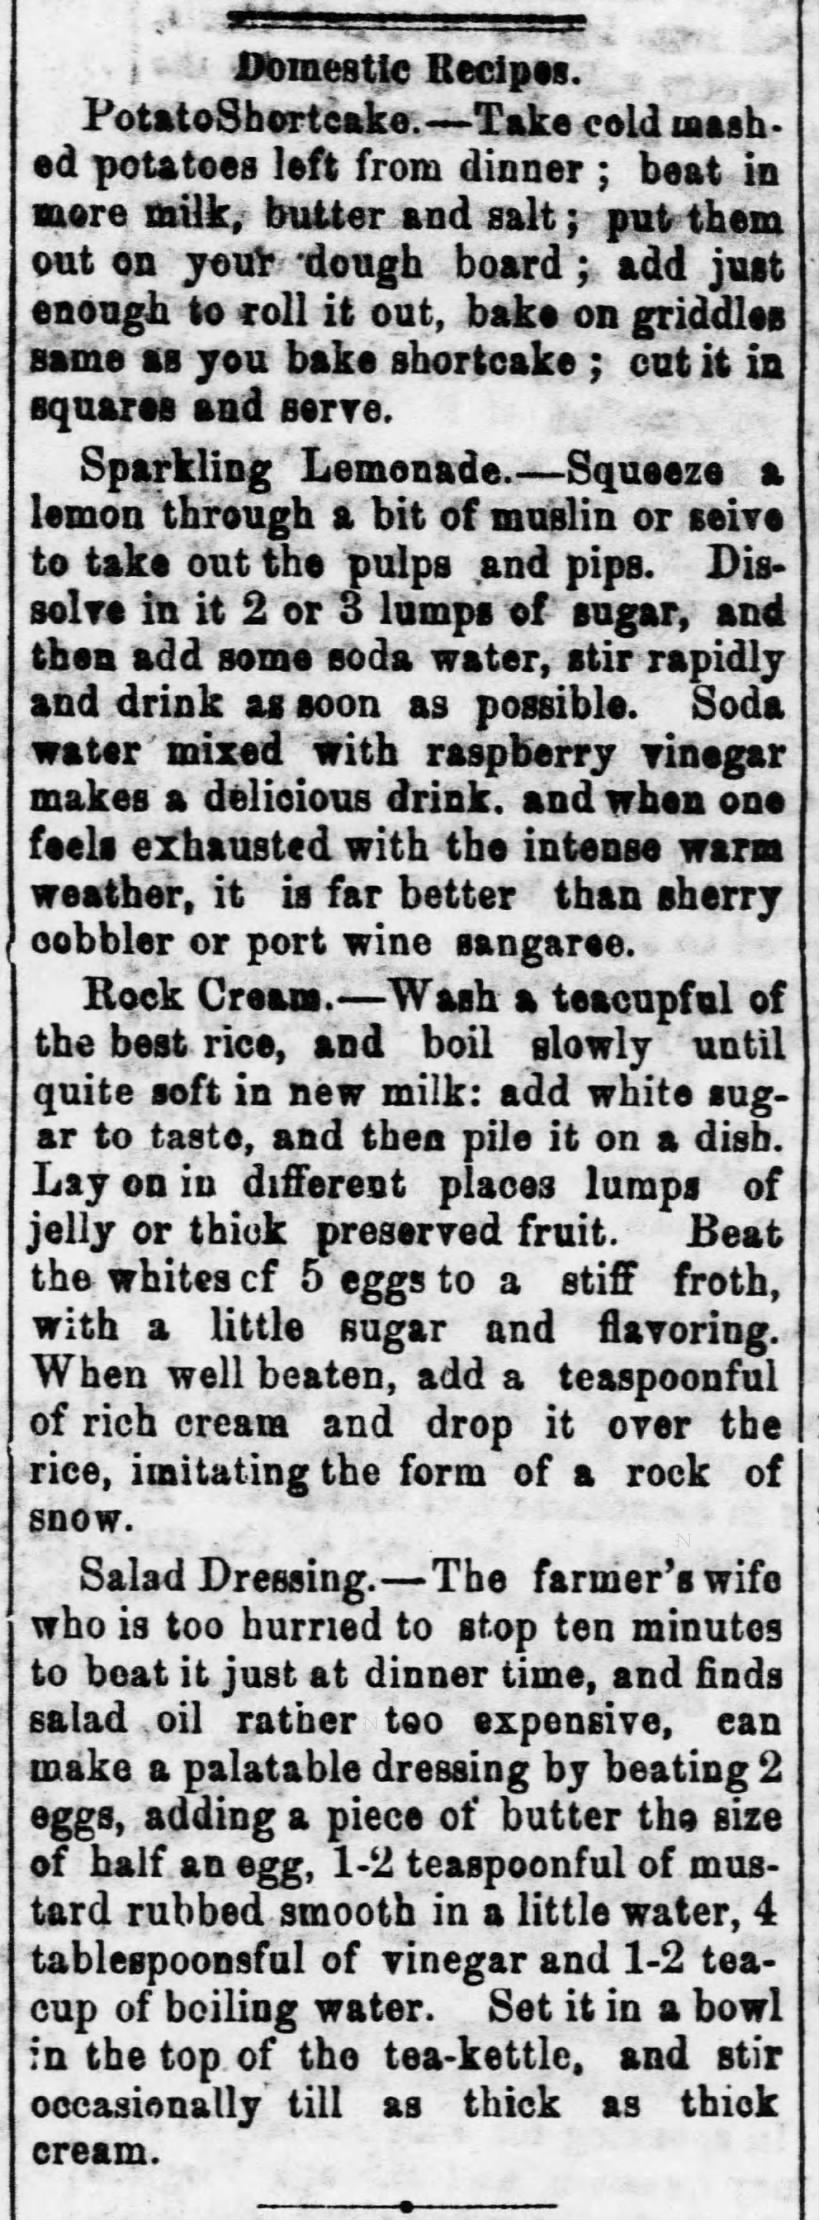 Domestic Recipes (including Sparkling Lemonade) 8-18-1875